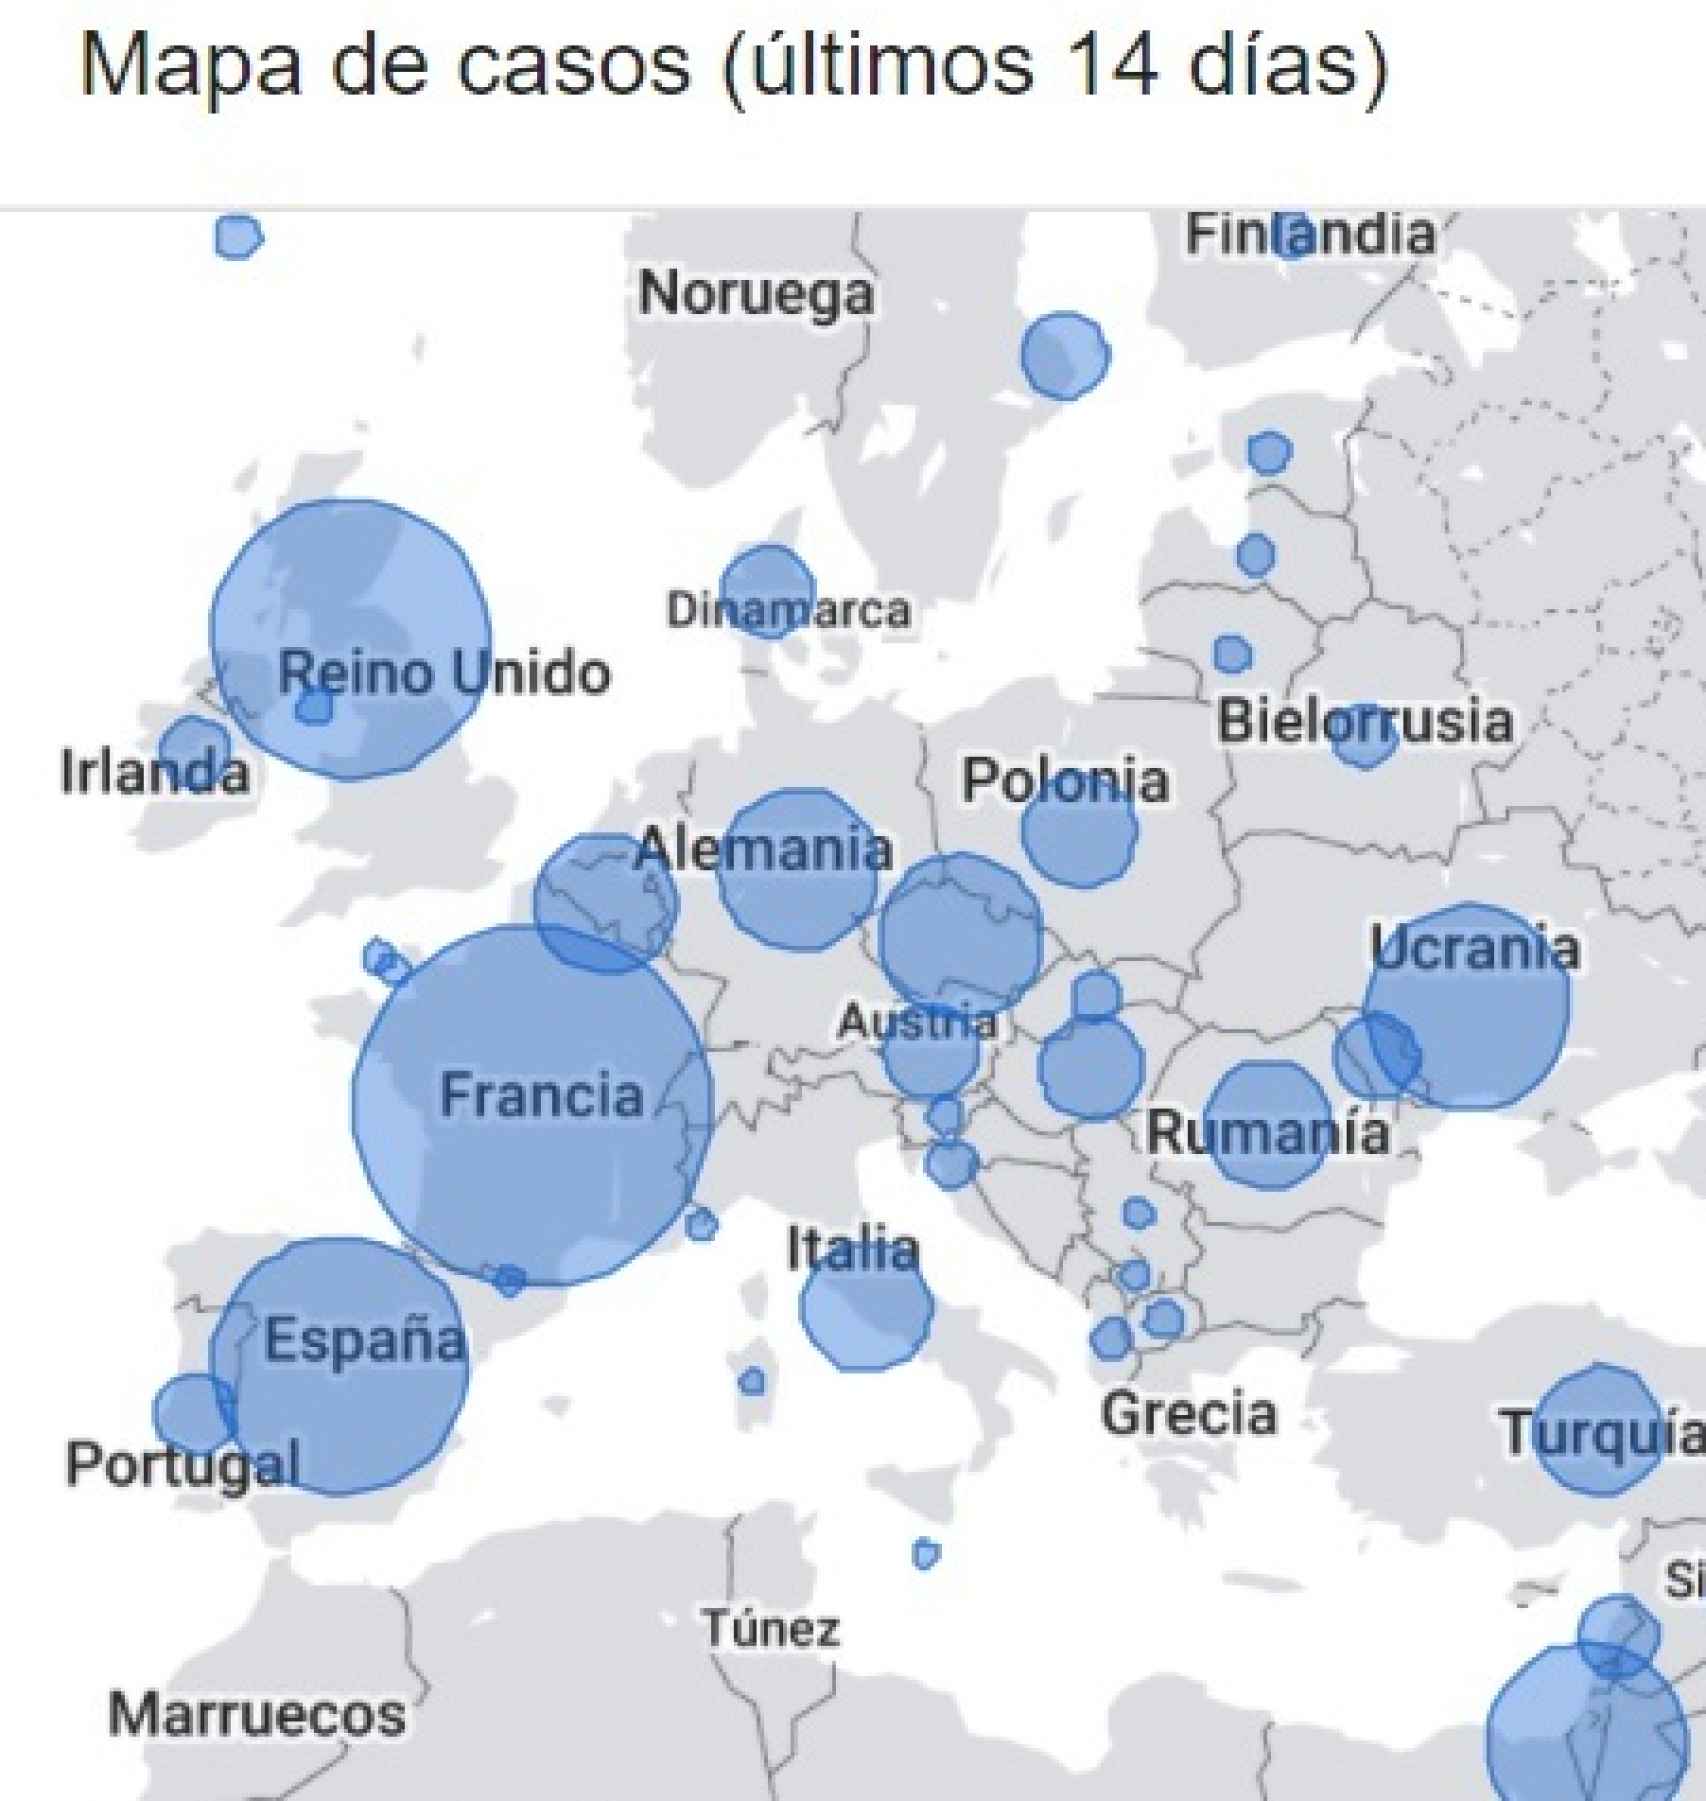 Mapa de casos en Europa en los últimos 14 días.